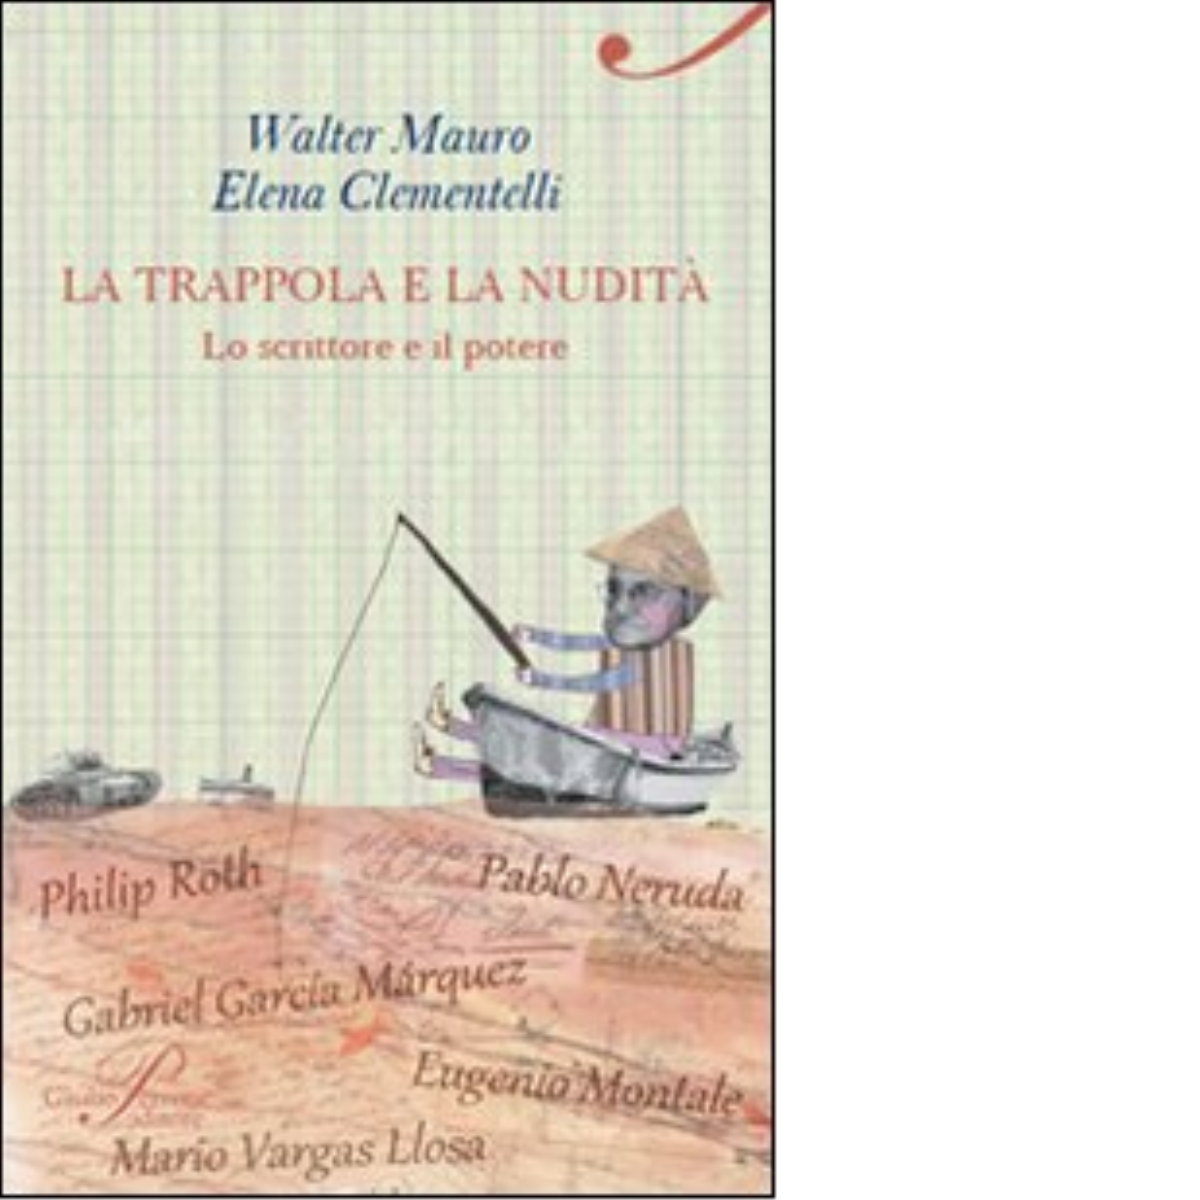 La trappola e la nudit? - Walter Mauro, Elena Clementelli - Perrone, 2012